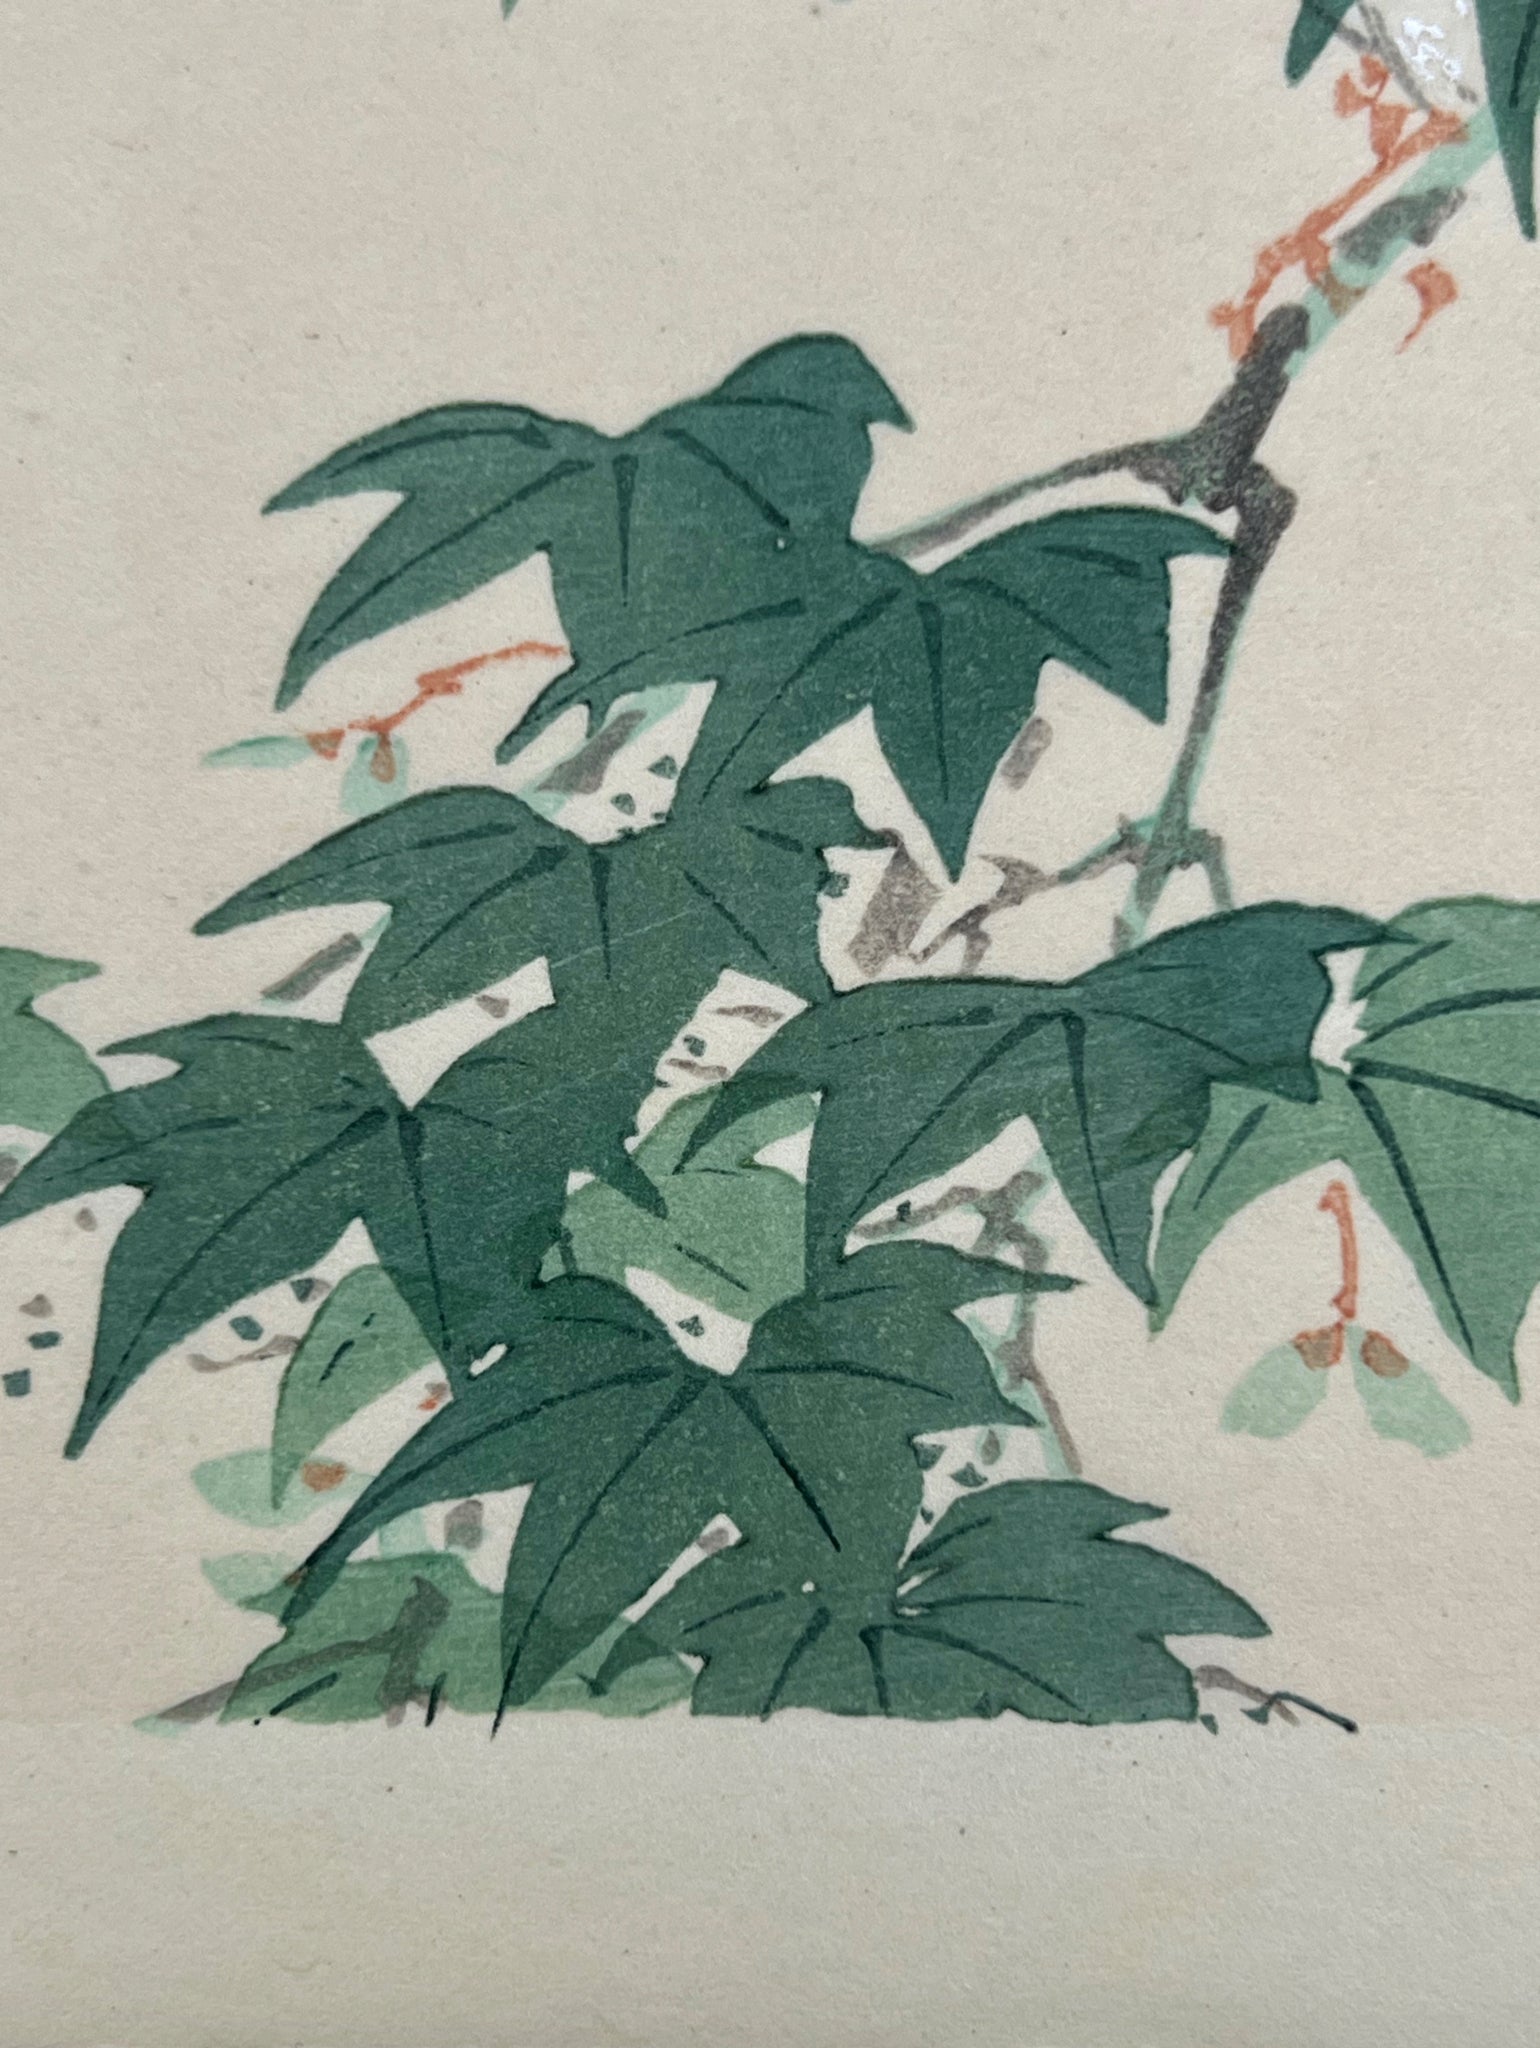 estampe japonaise oiseau sur une branche d'érable vert, les feuilles vertes d'érable